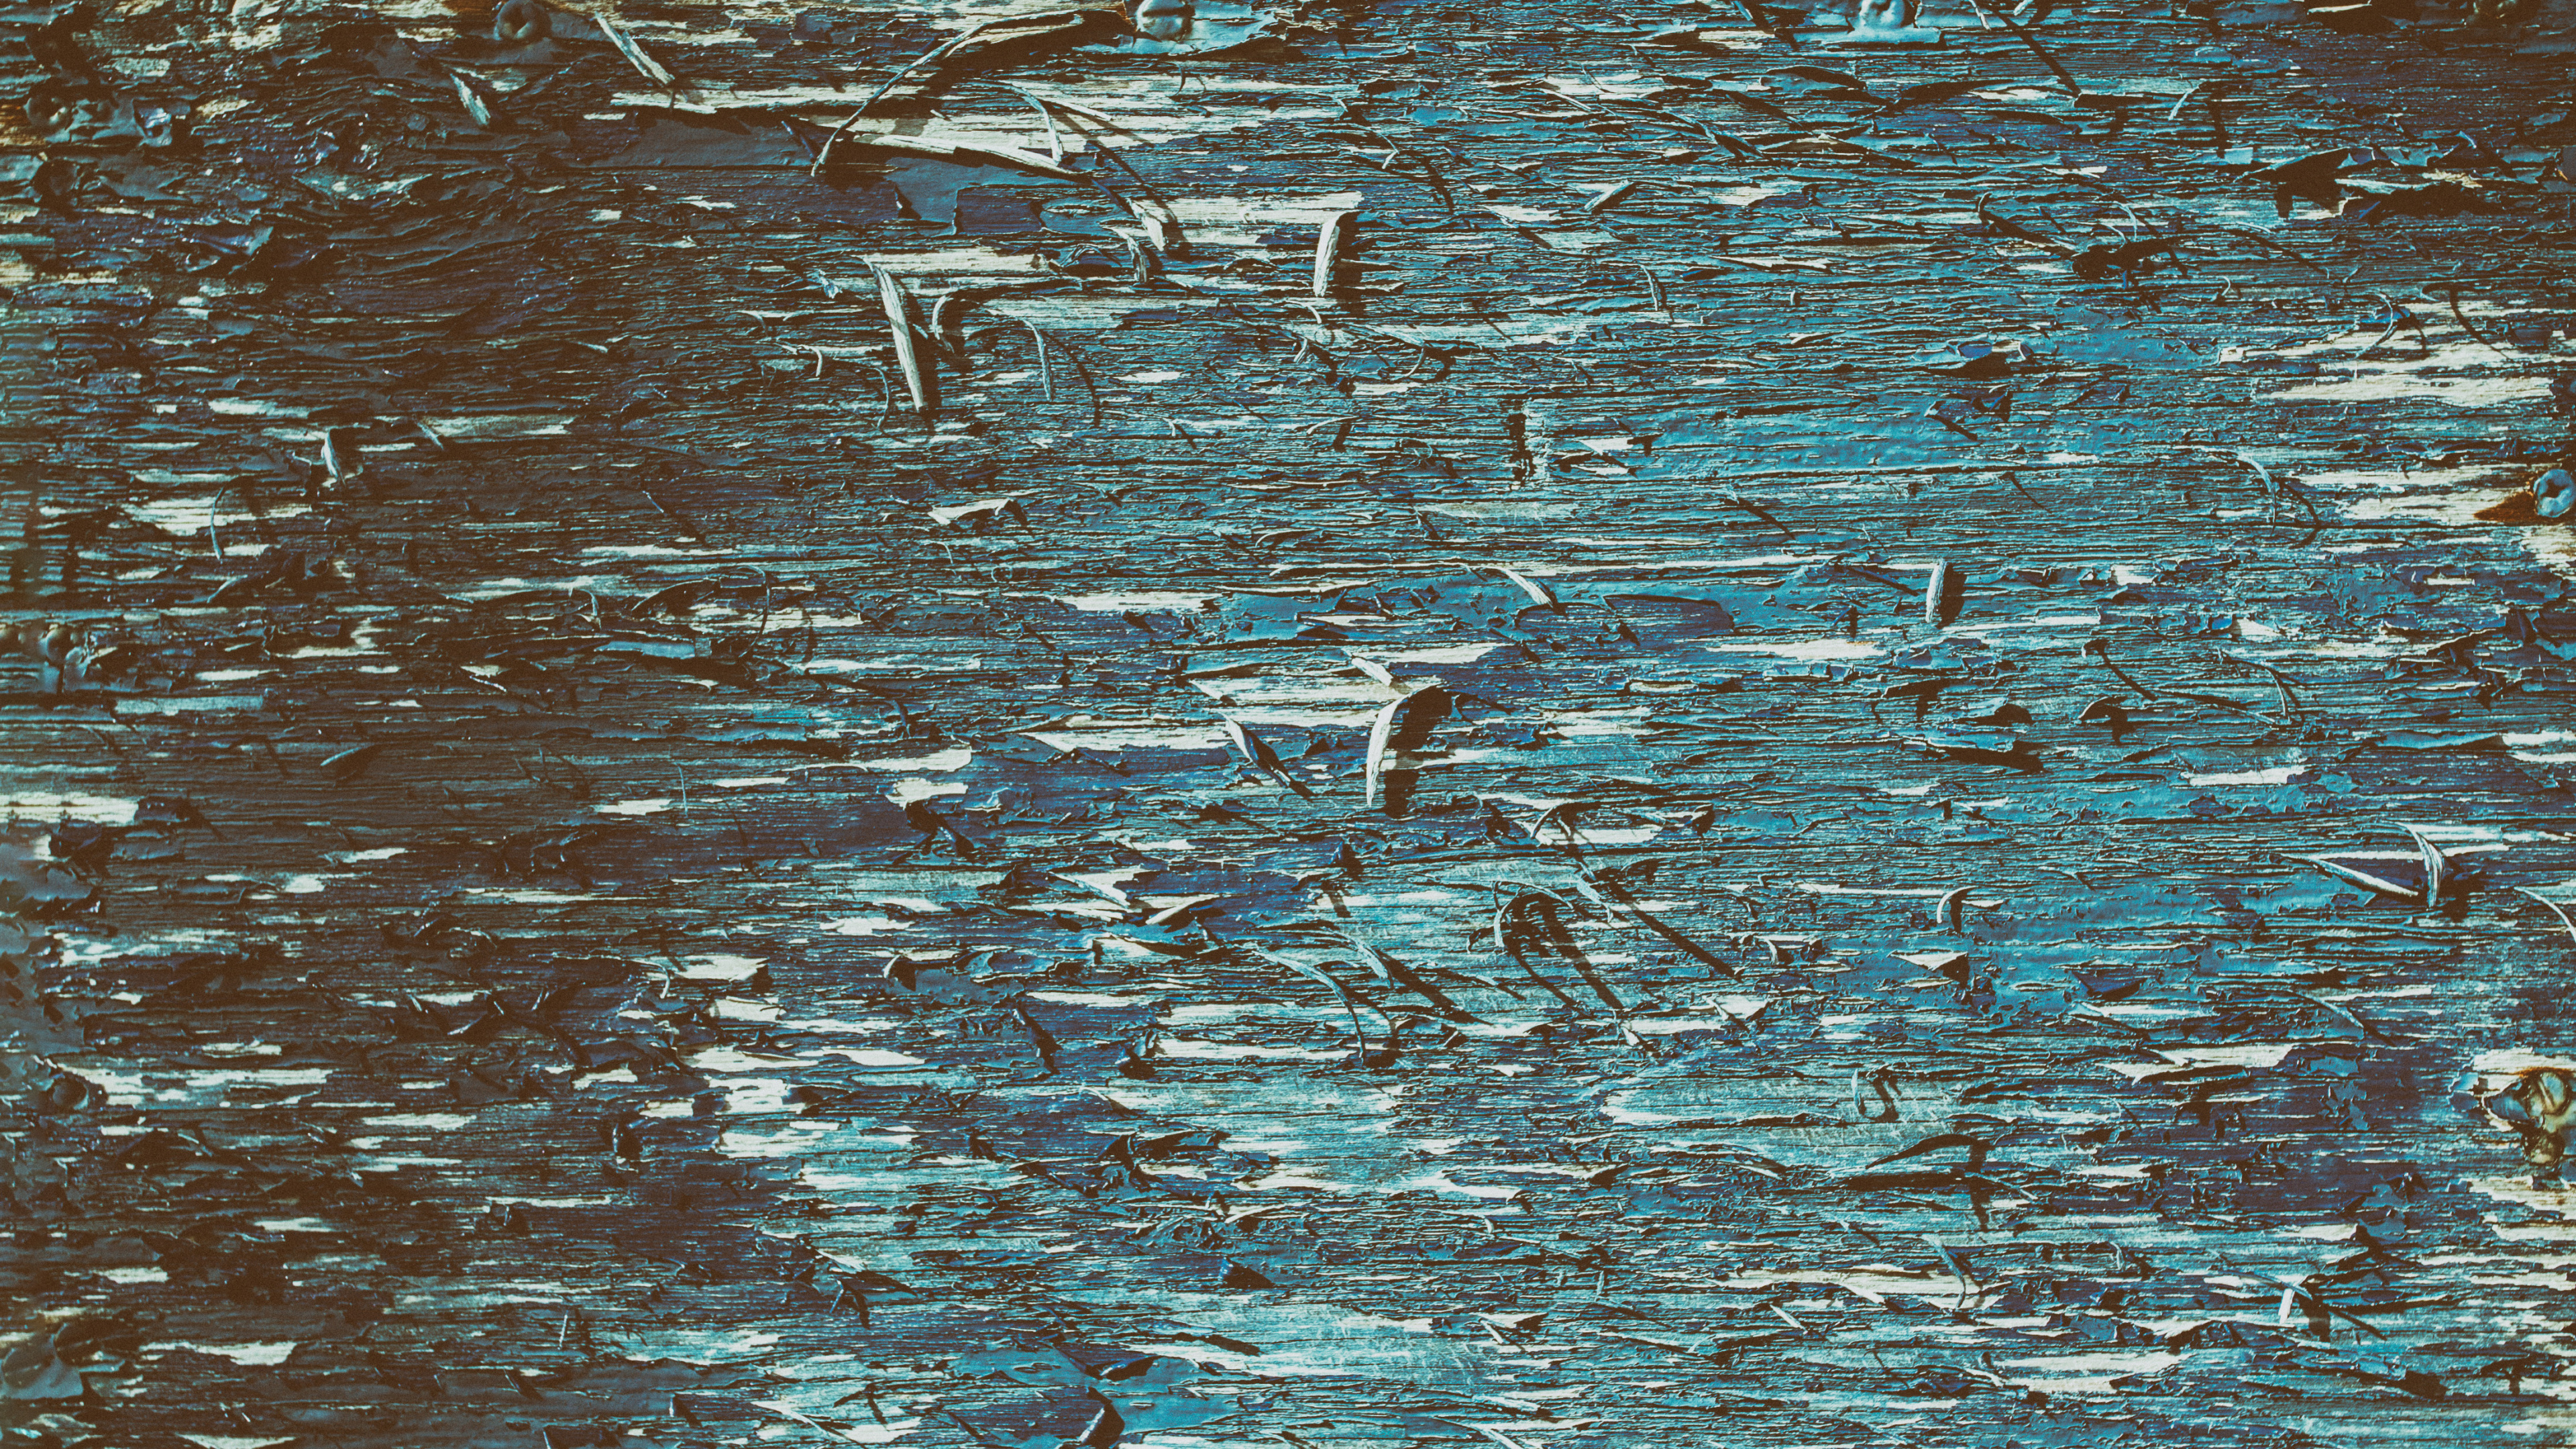 Oiseaux Blancs et Noirs Sur L'eau. Wallpaper in 3840x2160 Resolution